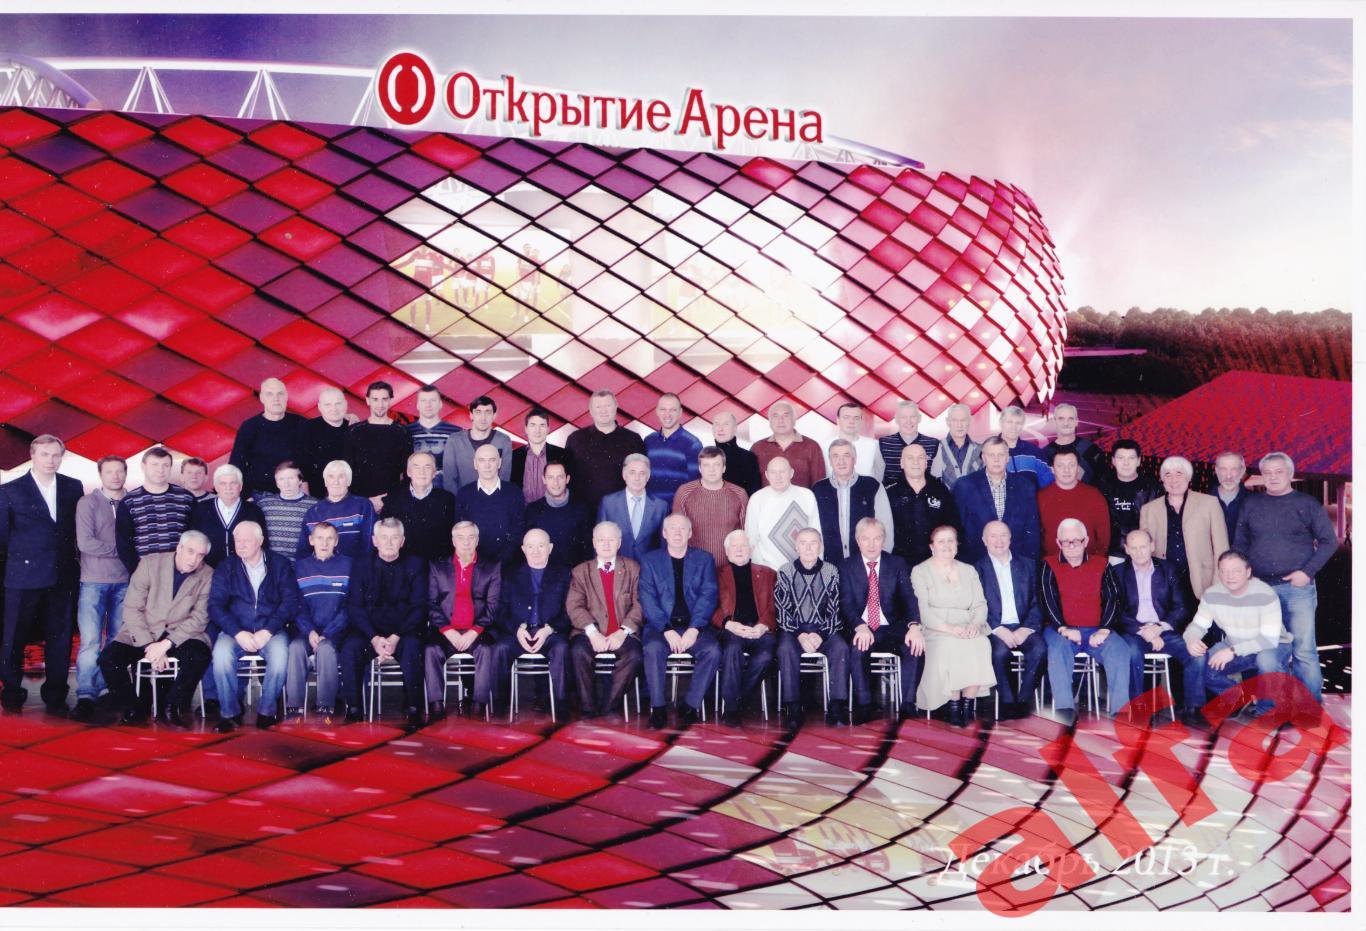 Открытие стадиона команды Спартак Москва в декабре 2013 г.